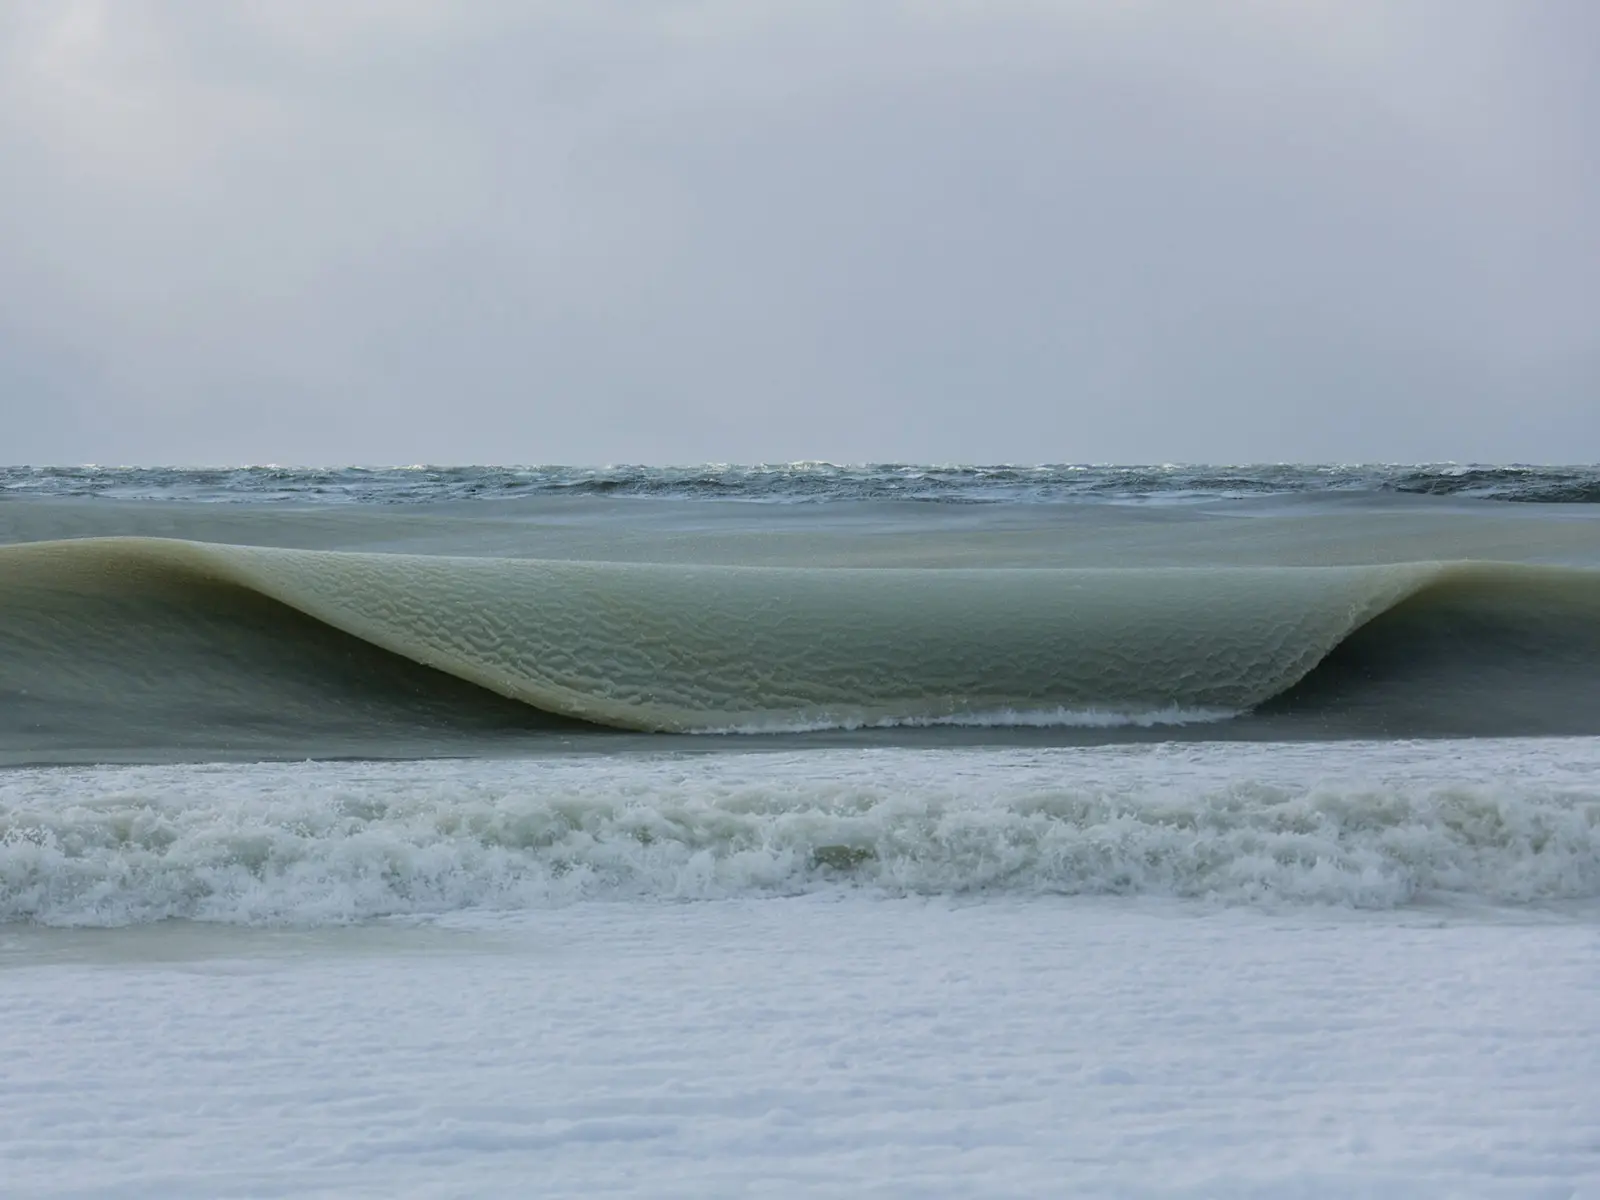 Le onde di ghiaccio, uno strano fenomeno nel Nantucket